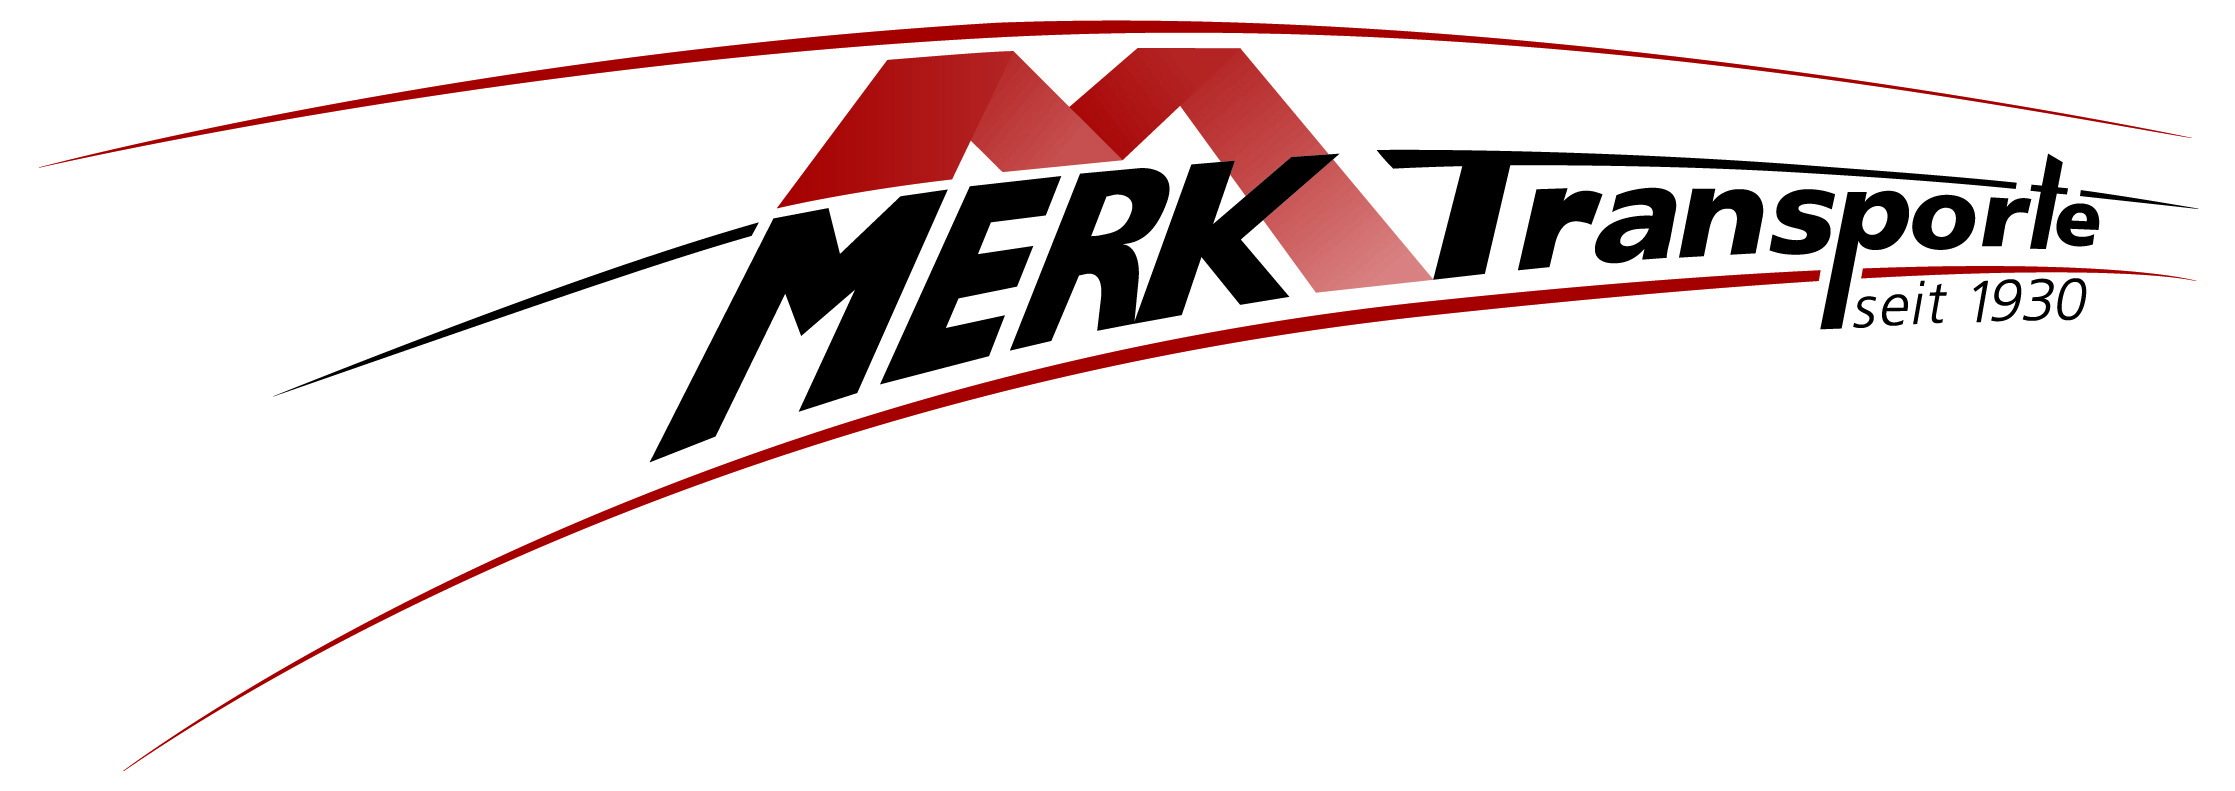 Merk Transporte GmbH & Co. KG. Transporte